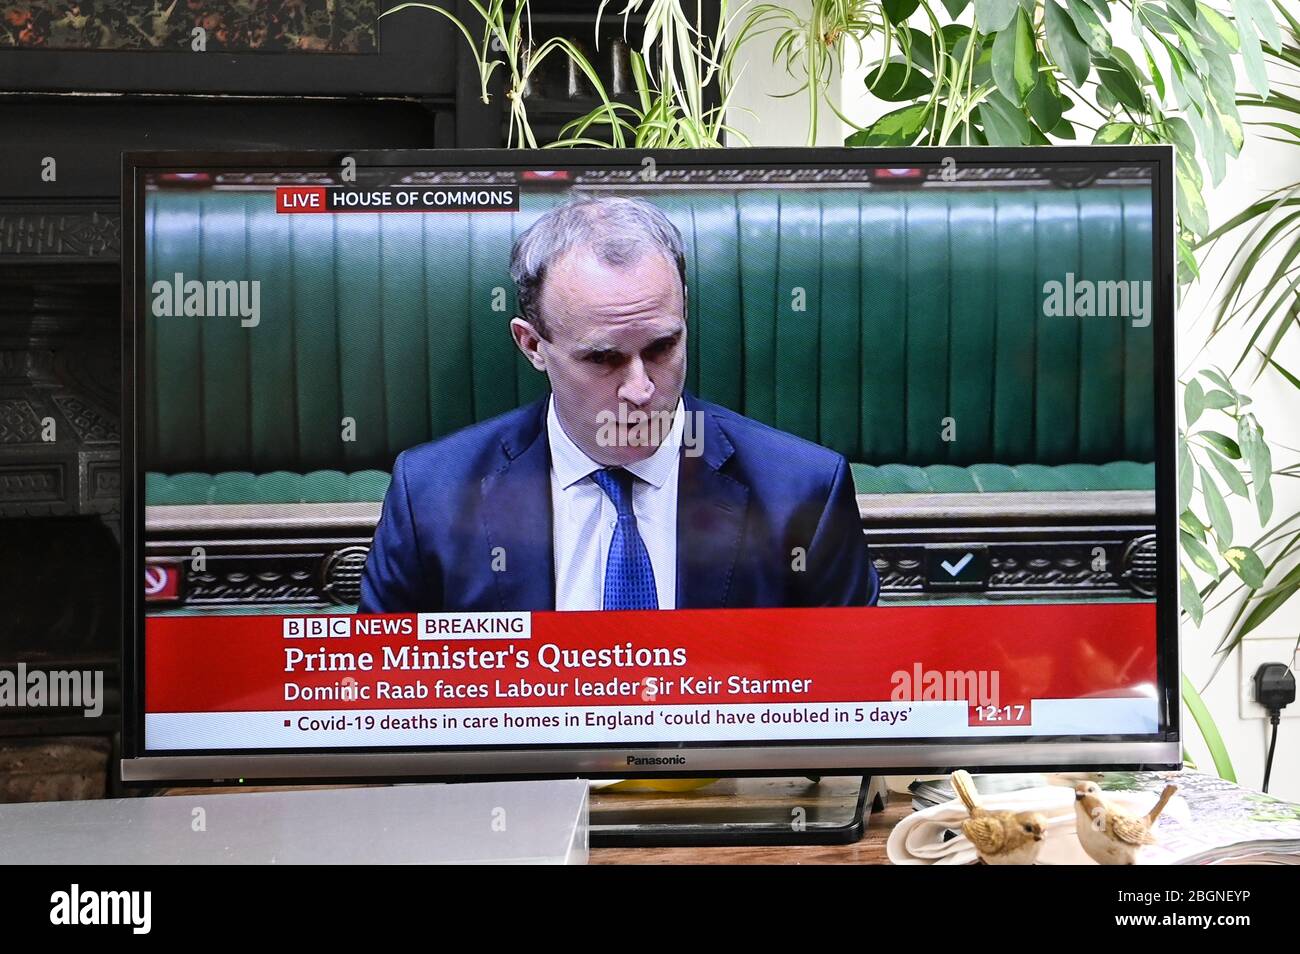 Dominic Raab, primer Ministro "de la "ciudad", respondiendo a las preguntas sobre las pruebas de Covid del nuevo líder del Partido Laborista Sir Keir Starmer en las PMQs. Foto de stock